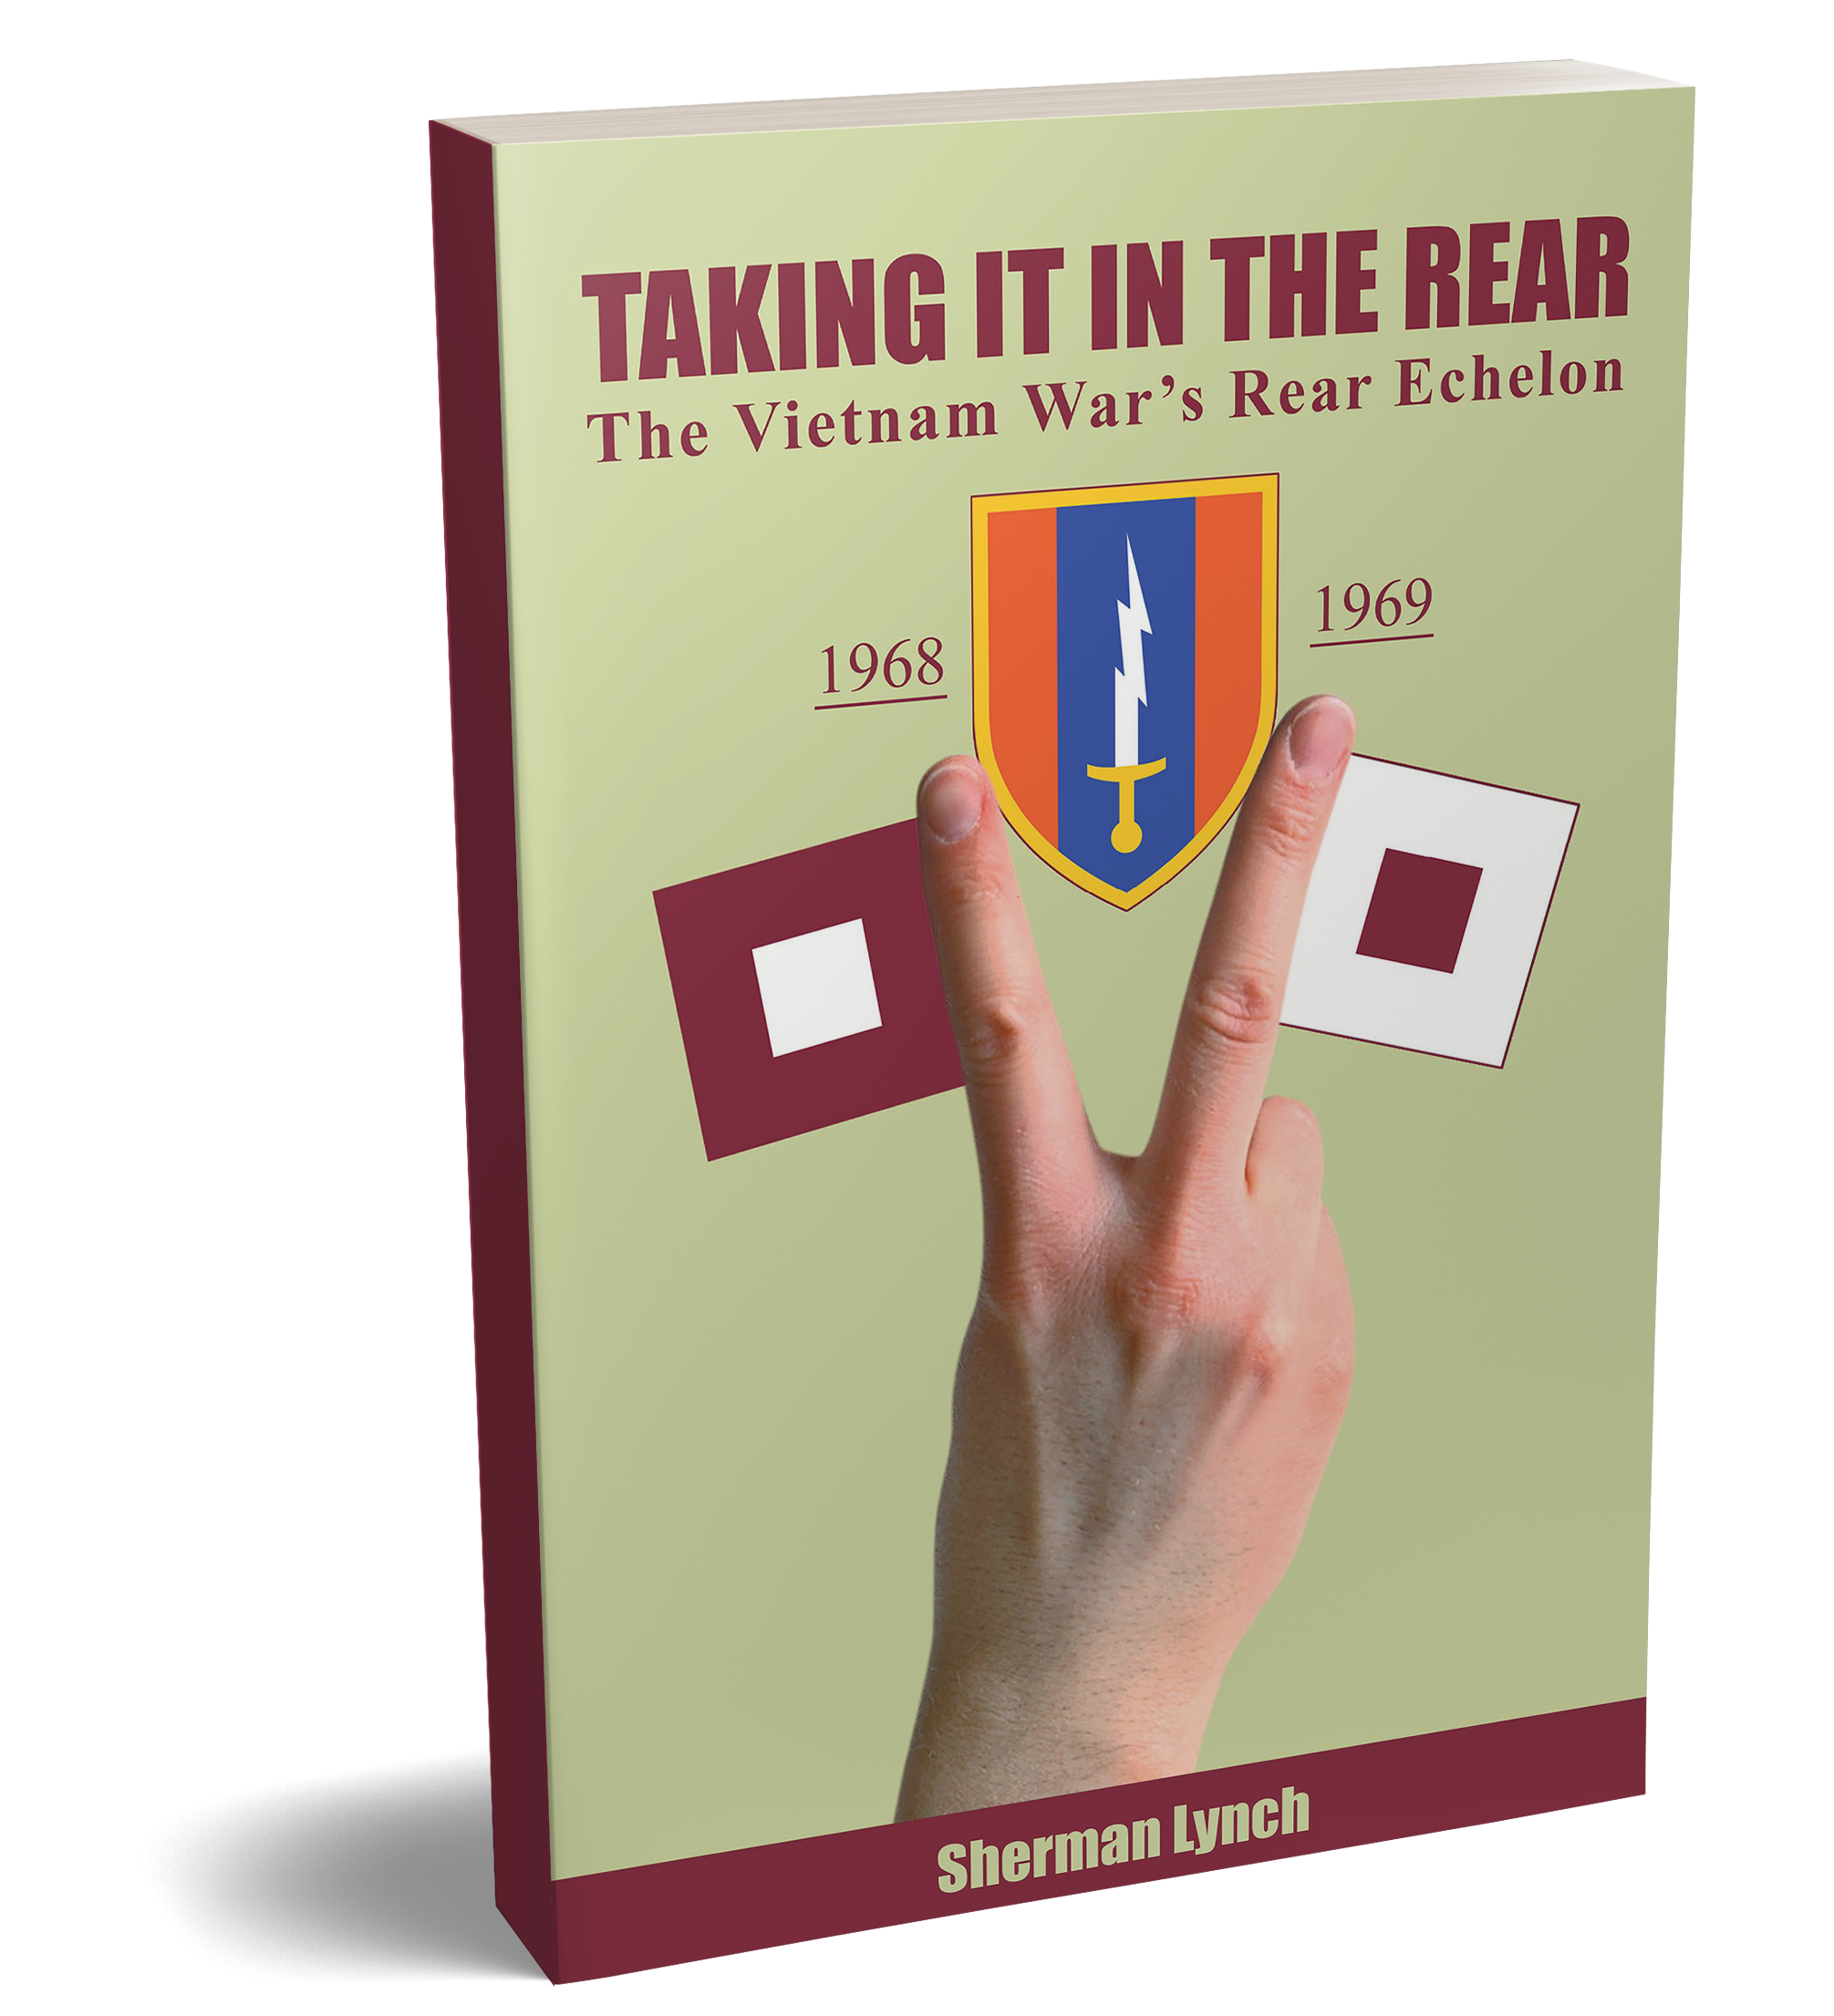 Cover of 'Taking It In the Rear: The Vietnam War's Rear Echelon' by Sherman Lynch